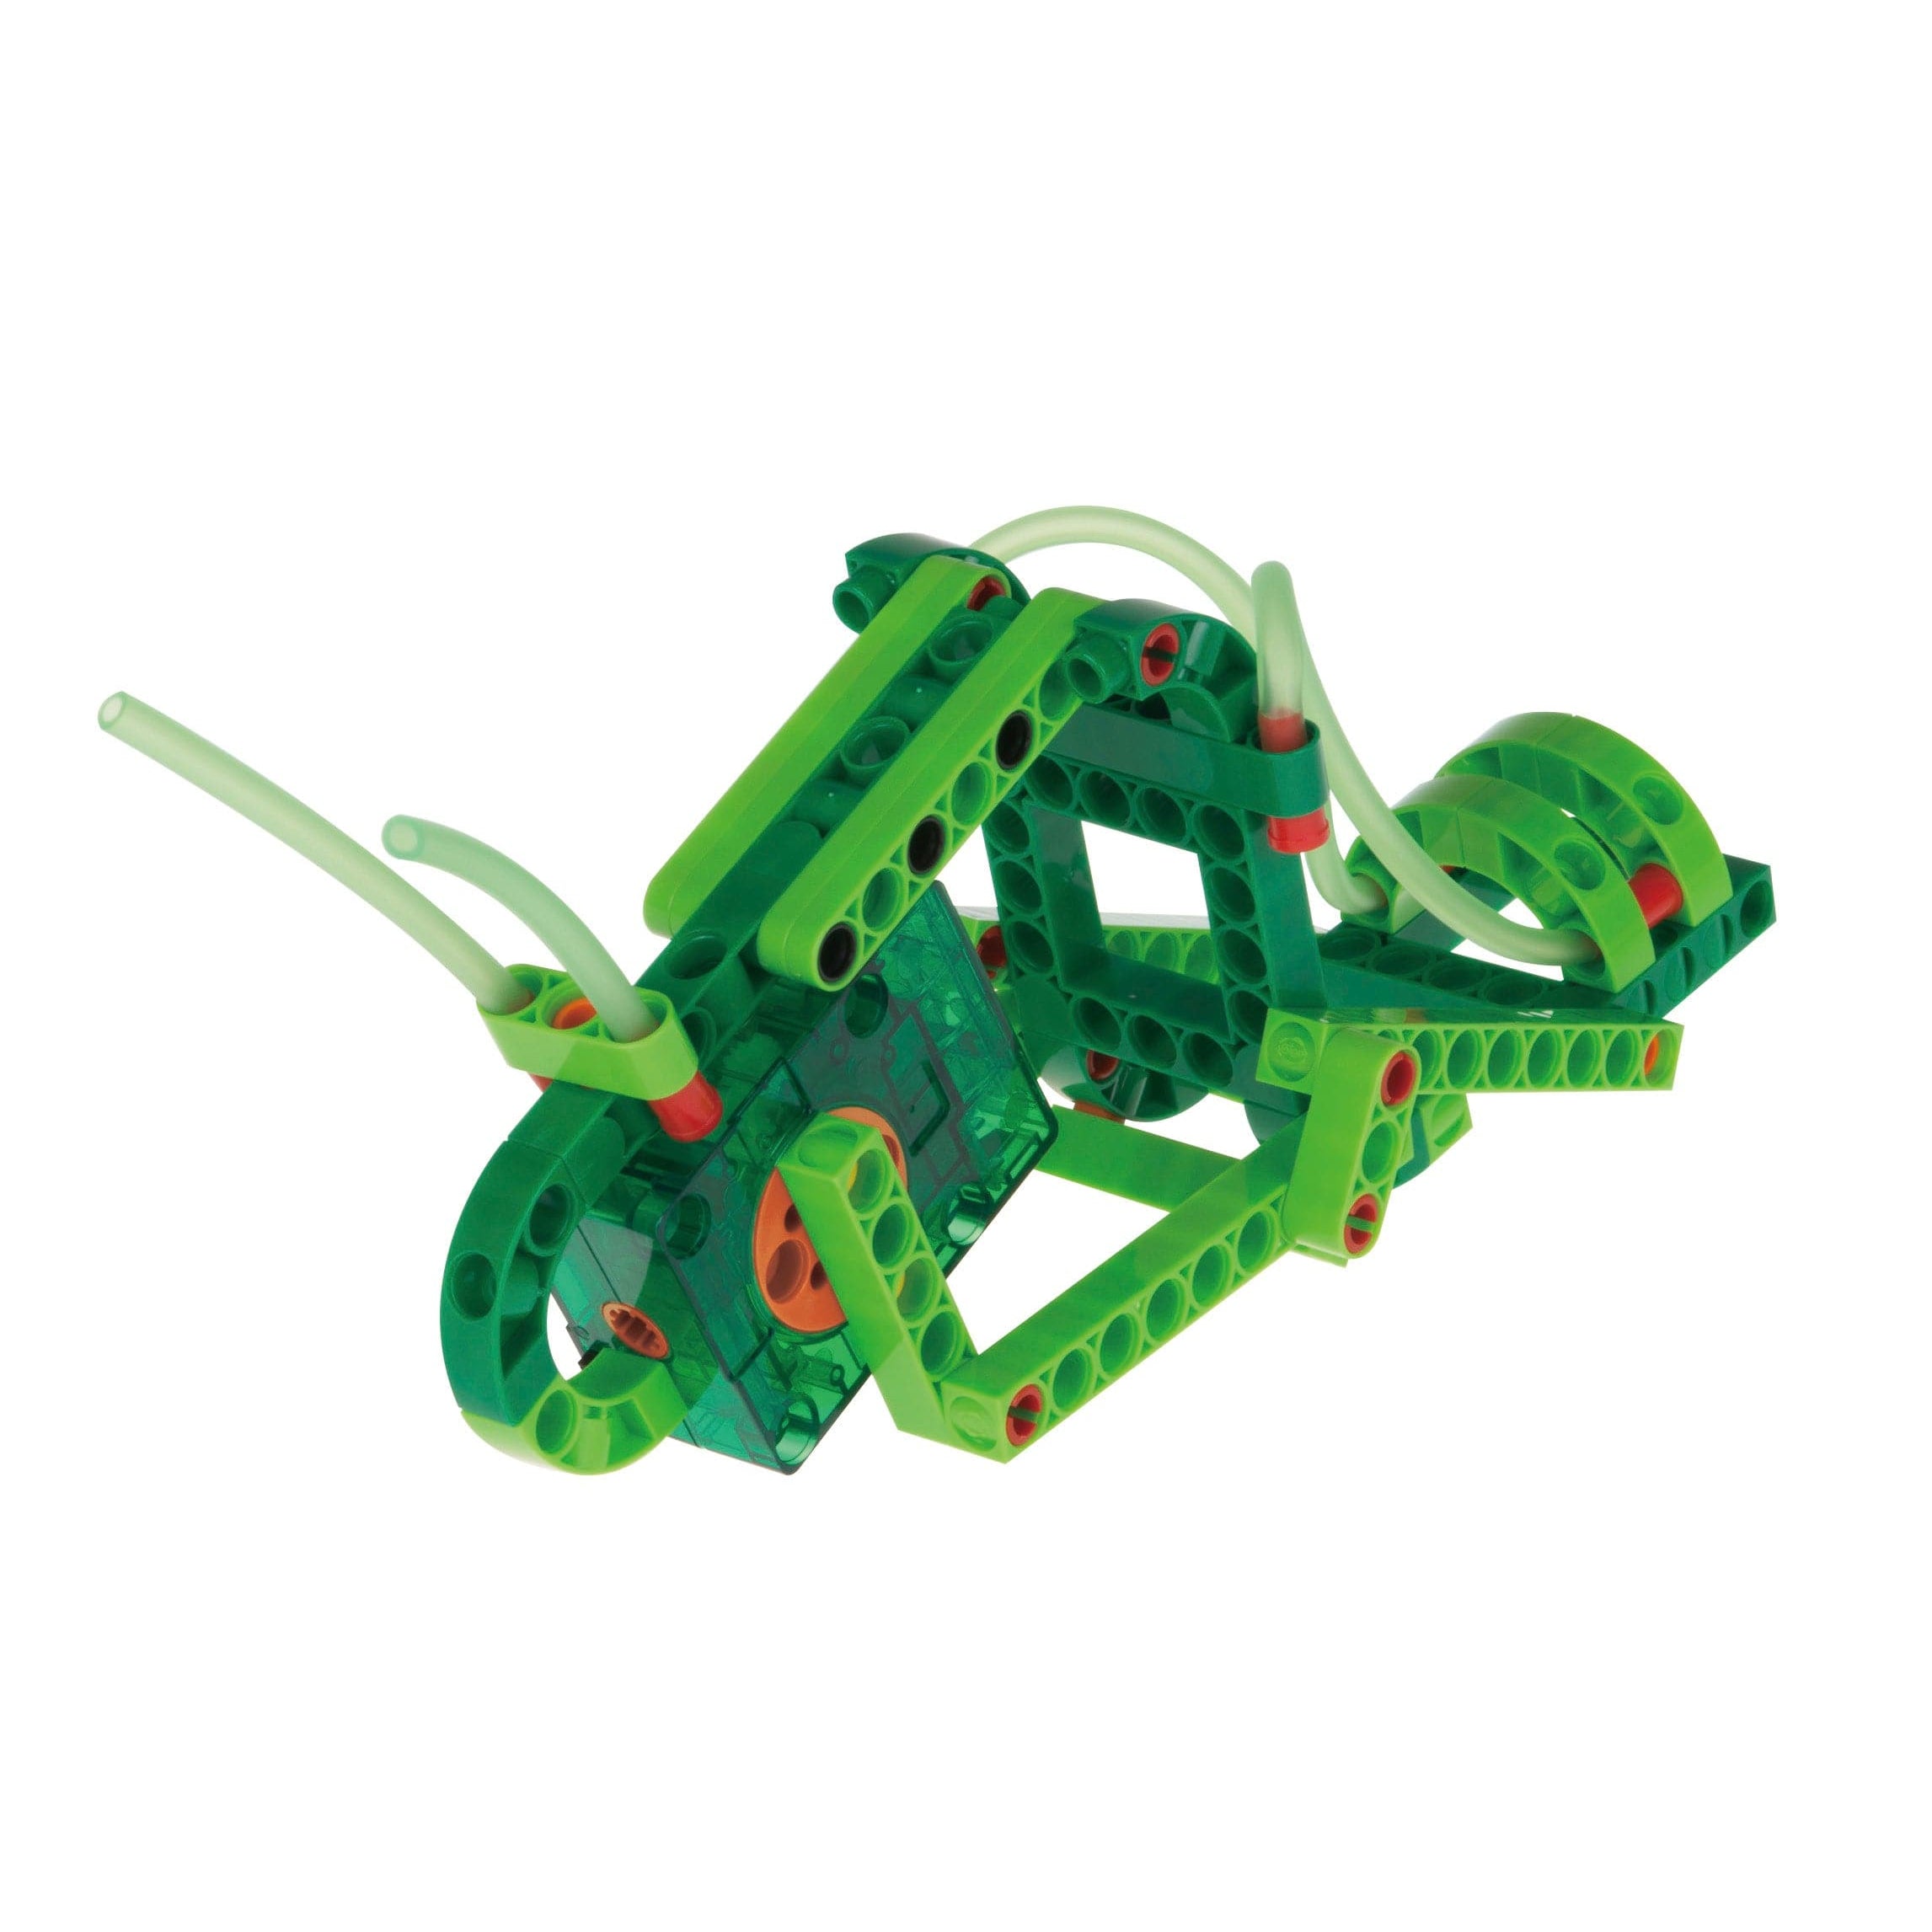 Thames & Kosmos-Geckobot-620365-Legacy Toys